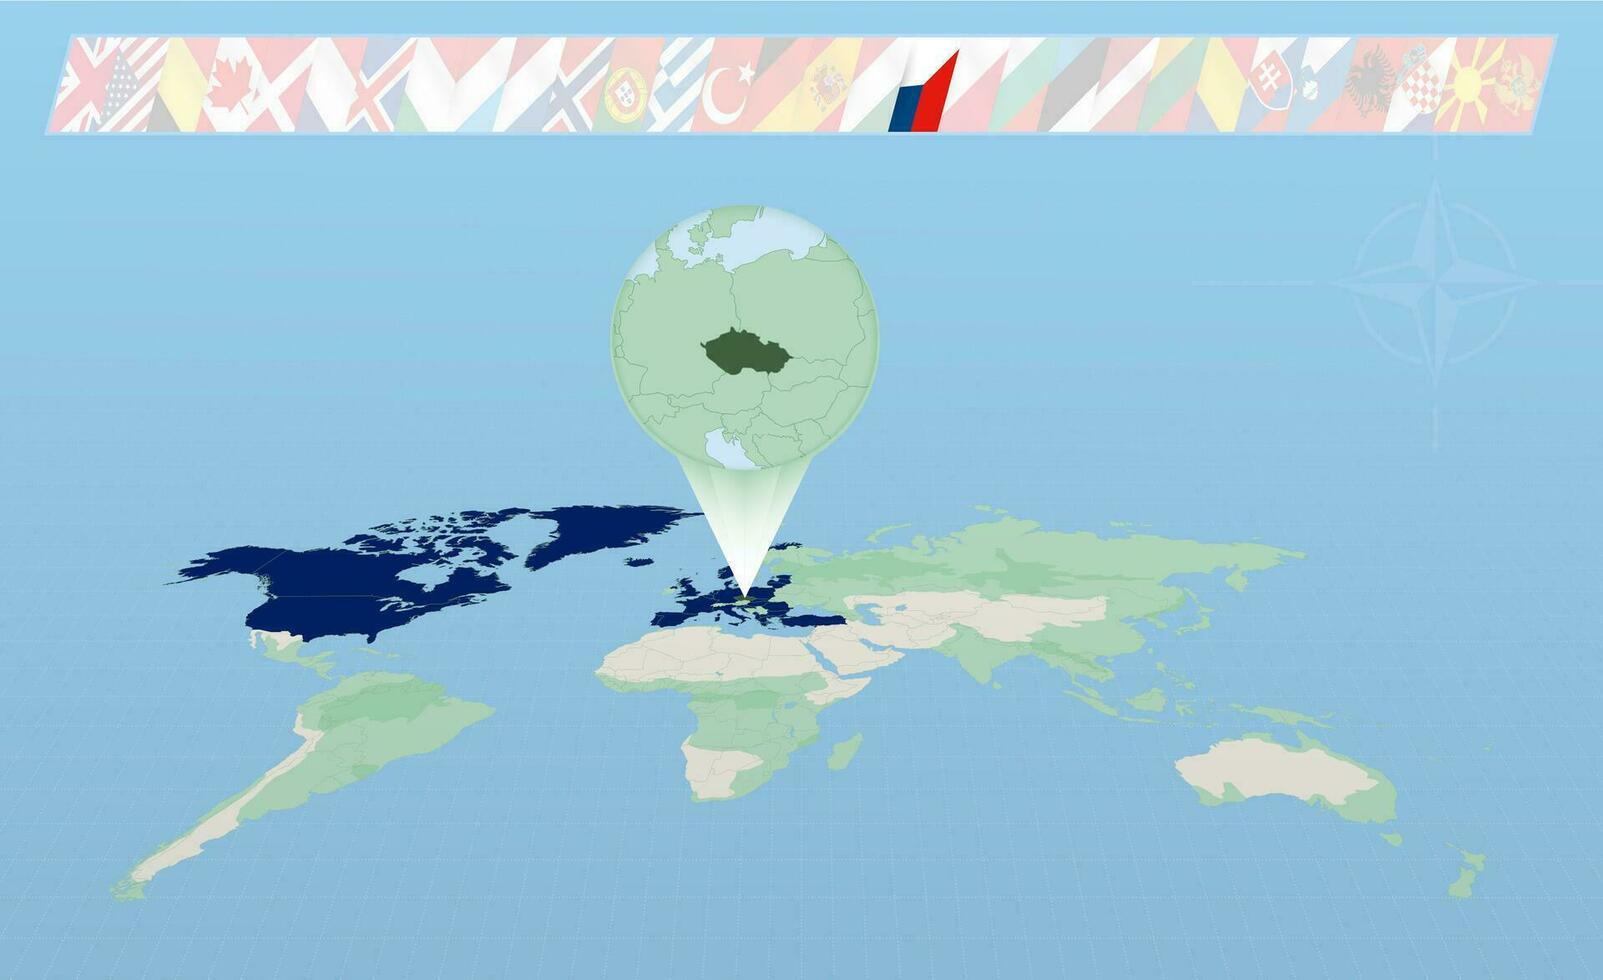 ceco repubblica membro di nord atlantico alleanza selezionato su prospettiva mondo carta geografica. bandiere di 30 membri di alleanza. vettore